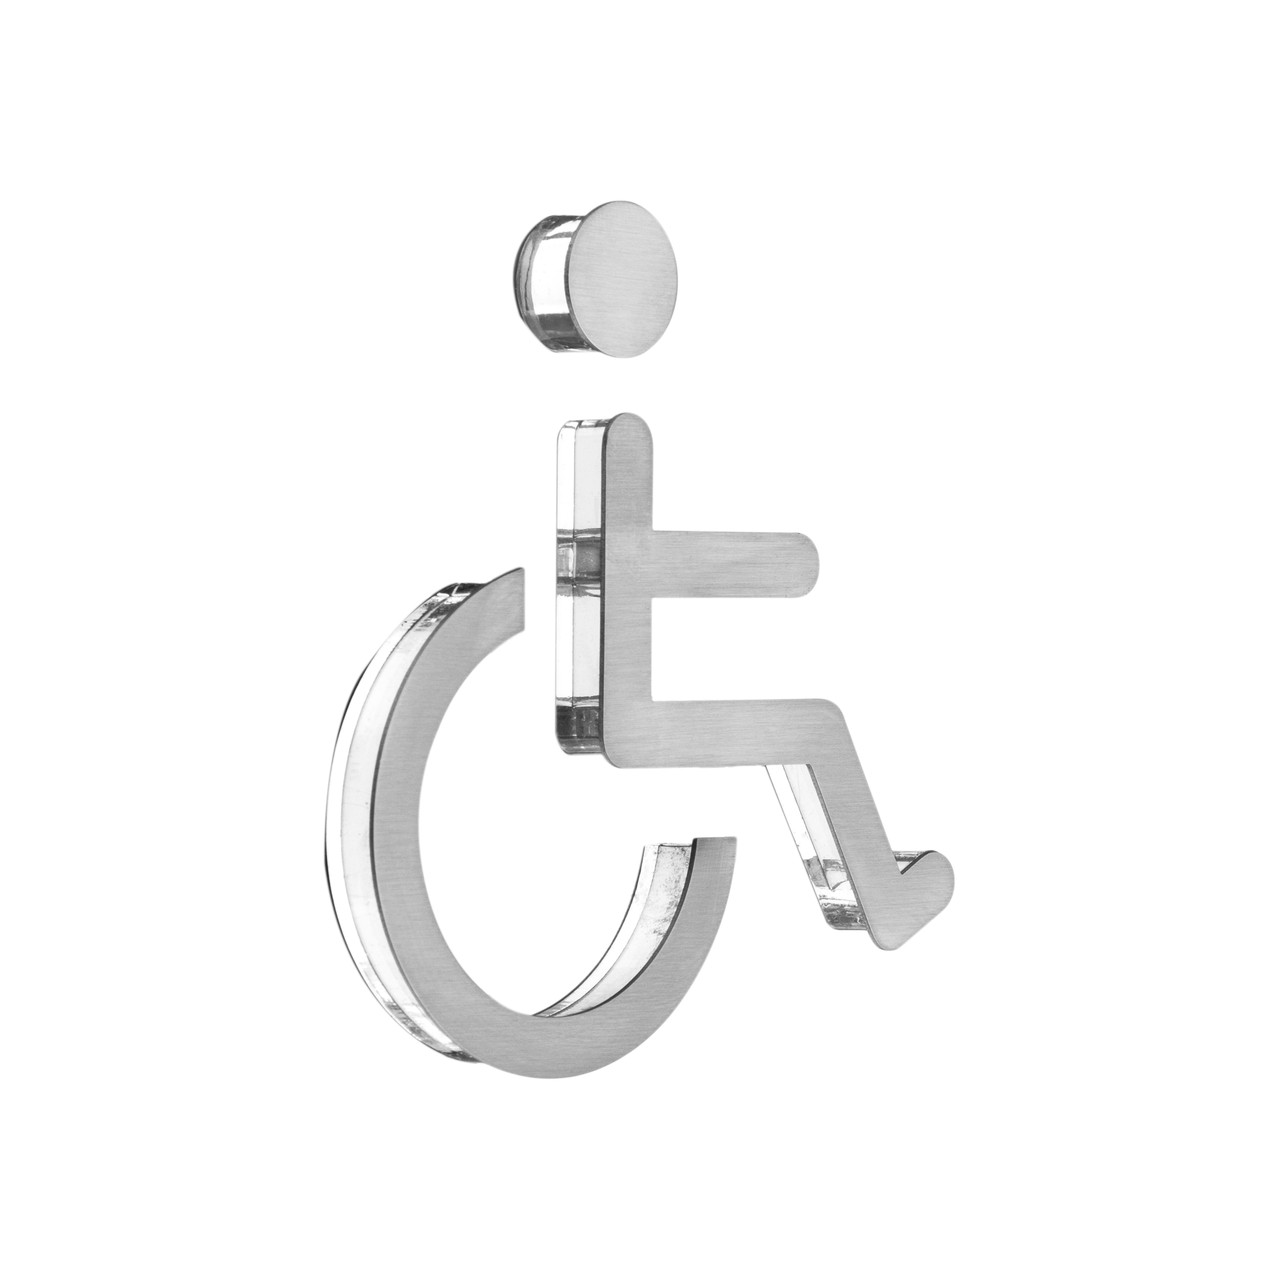 Табличка туалет для інвалідів